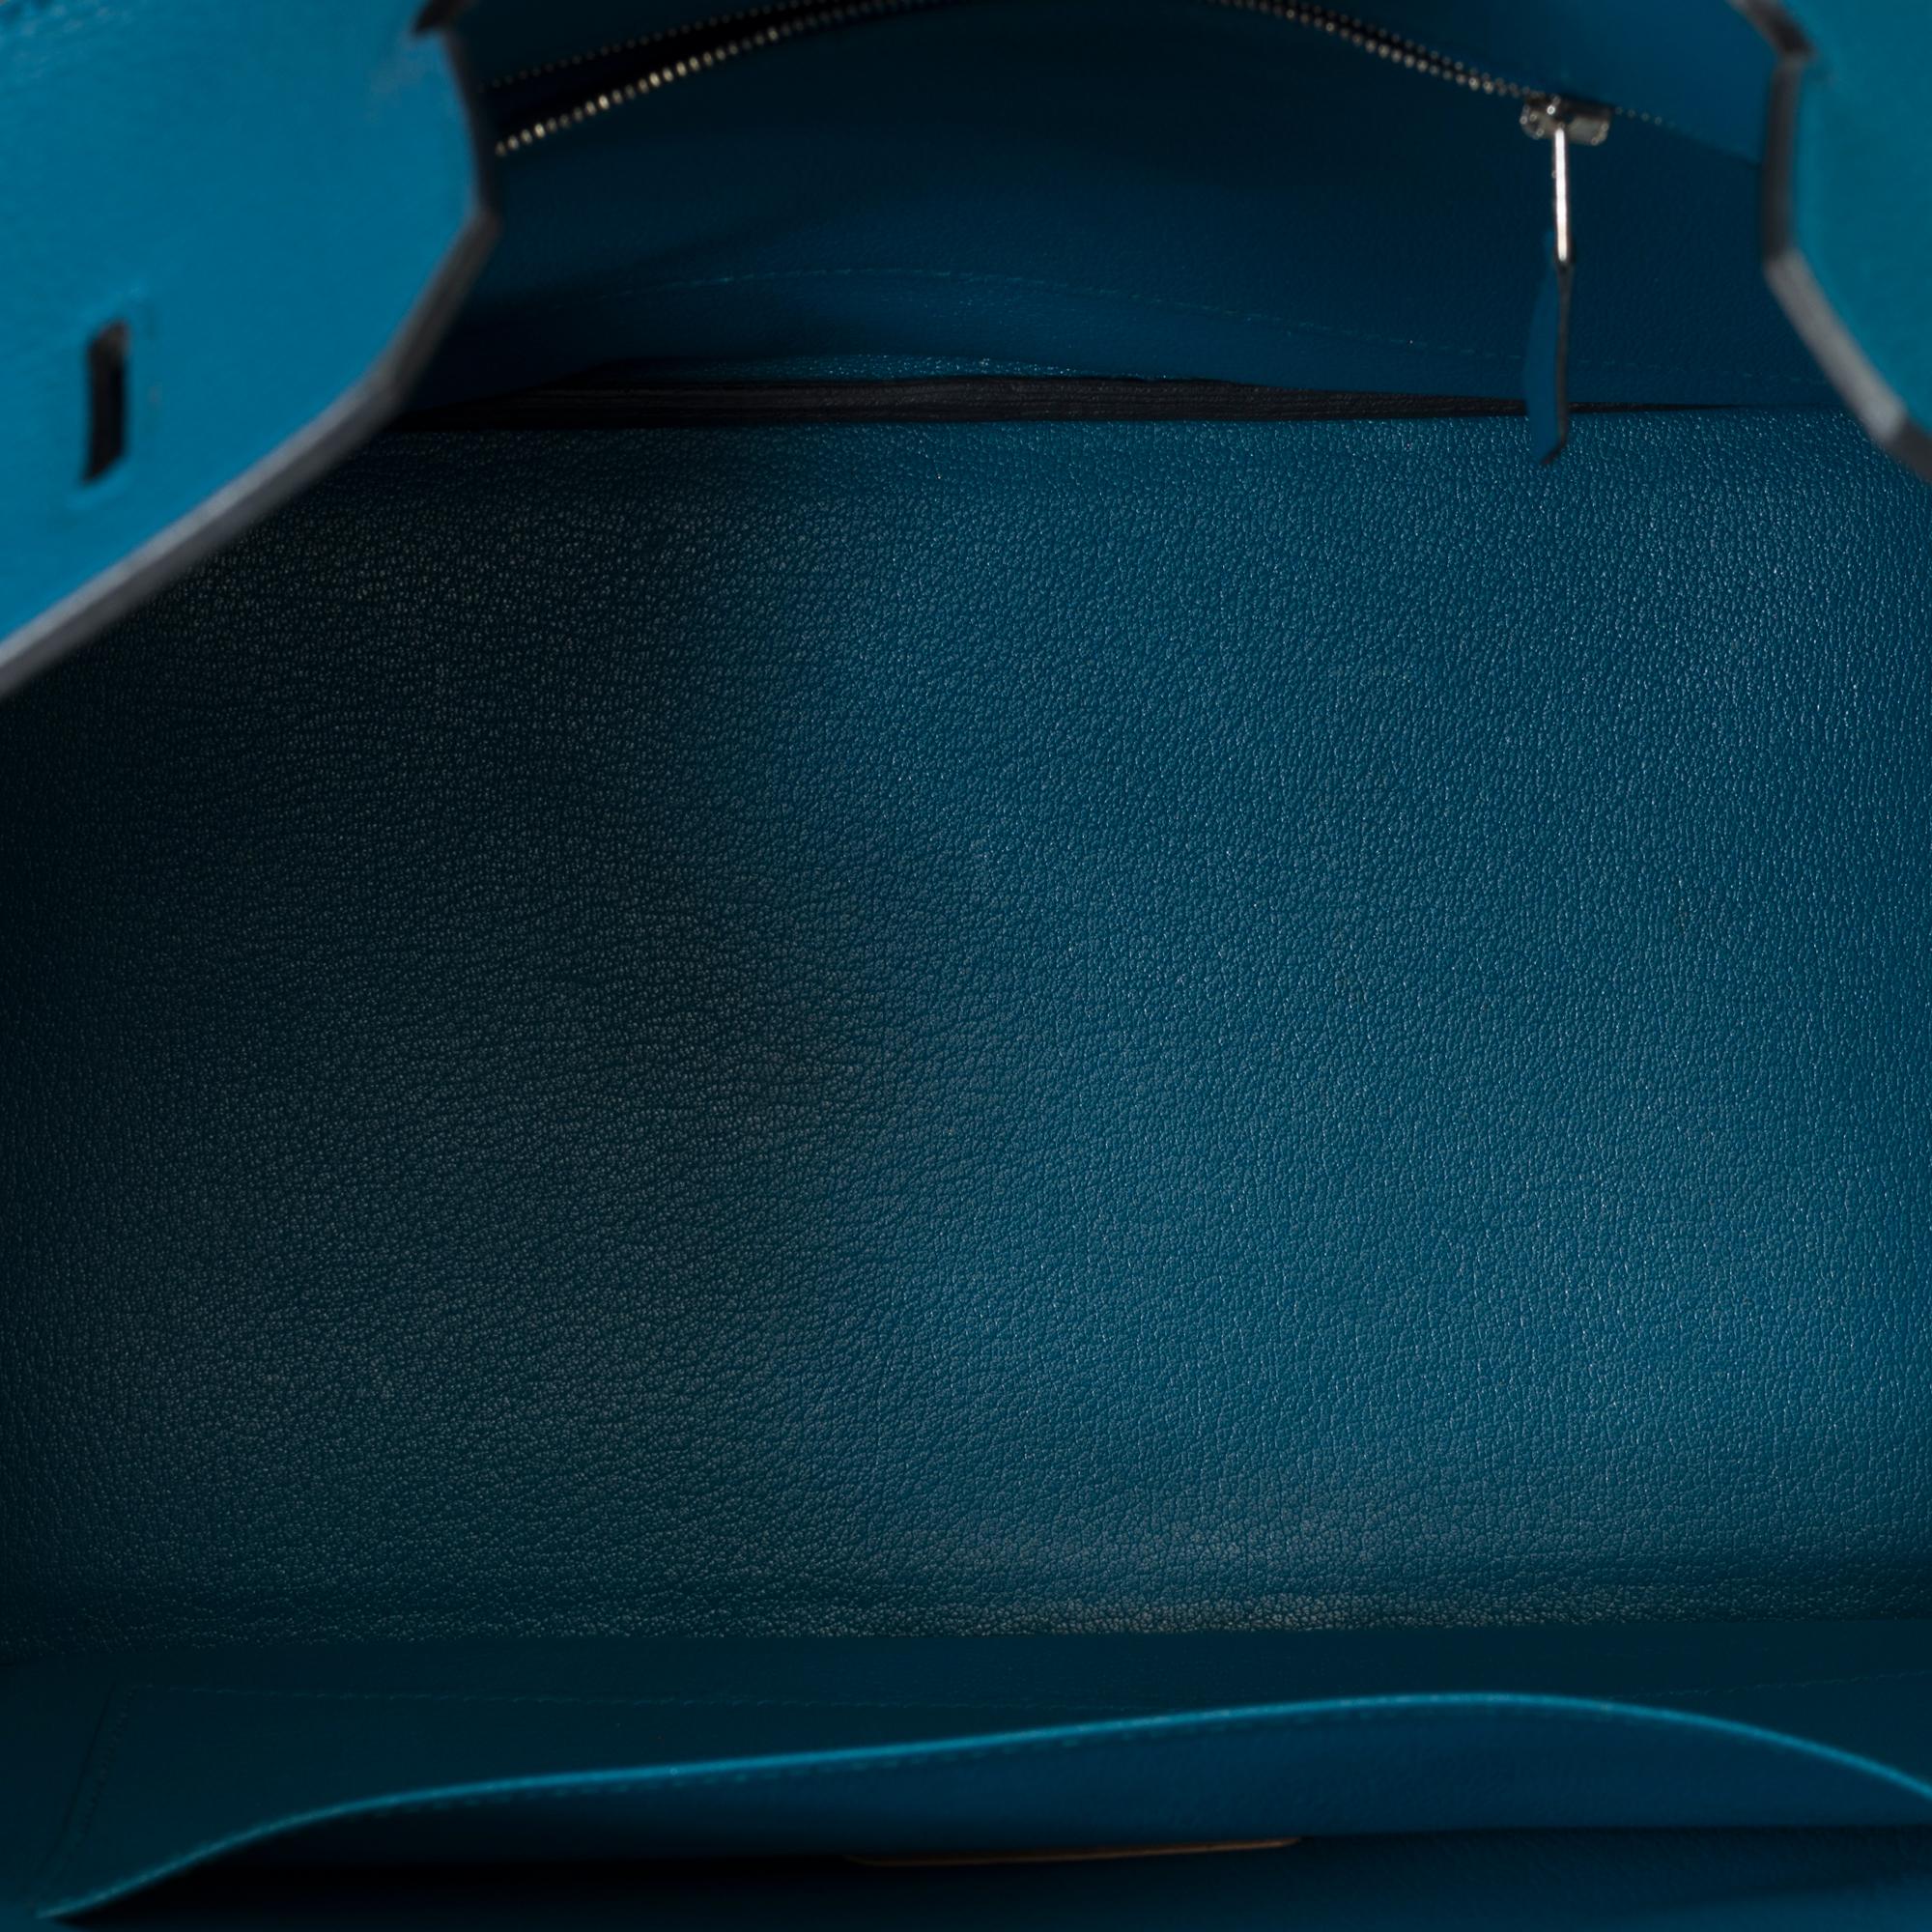 Amazing Hermes Birkin 35 handbag in Bleu Colvert Togo leather, SHW For Sale 5